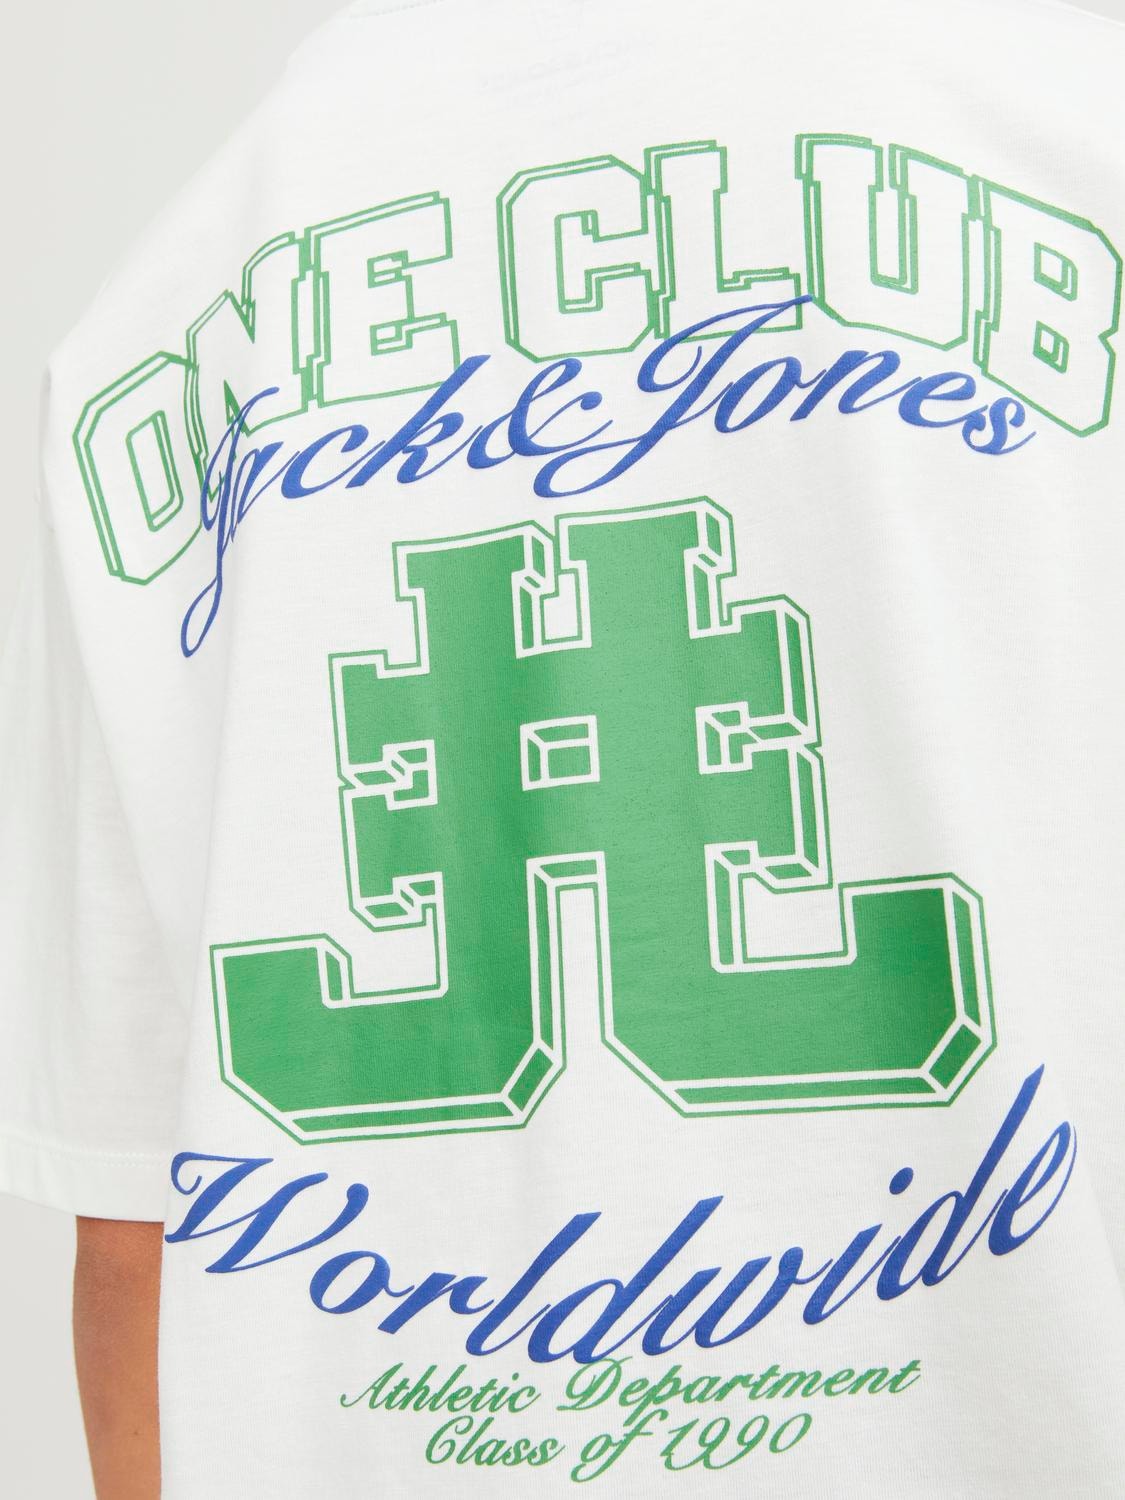 Jack & Jones T-shirt Imprimé Pour les garçons -Cloud Dancer - 12254238